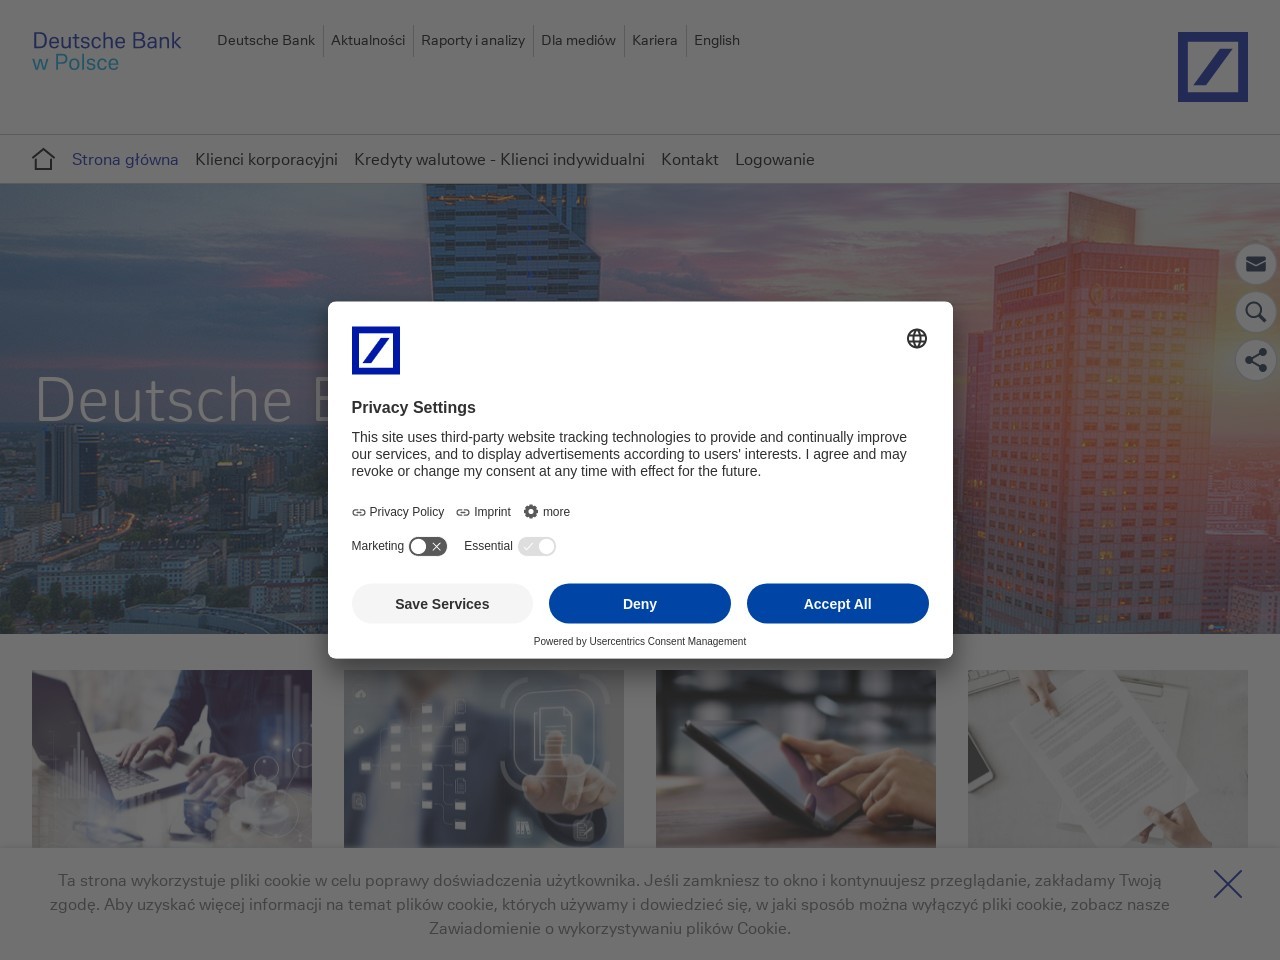 Strona główna - Deutsche Bank